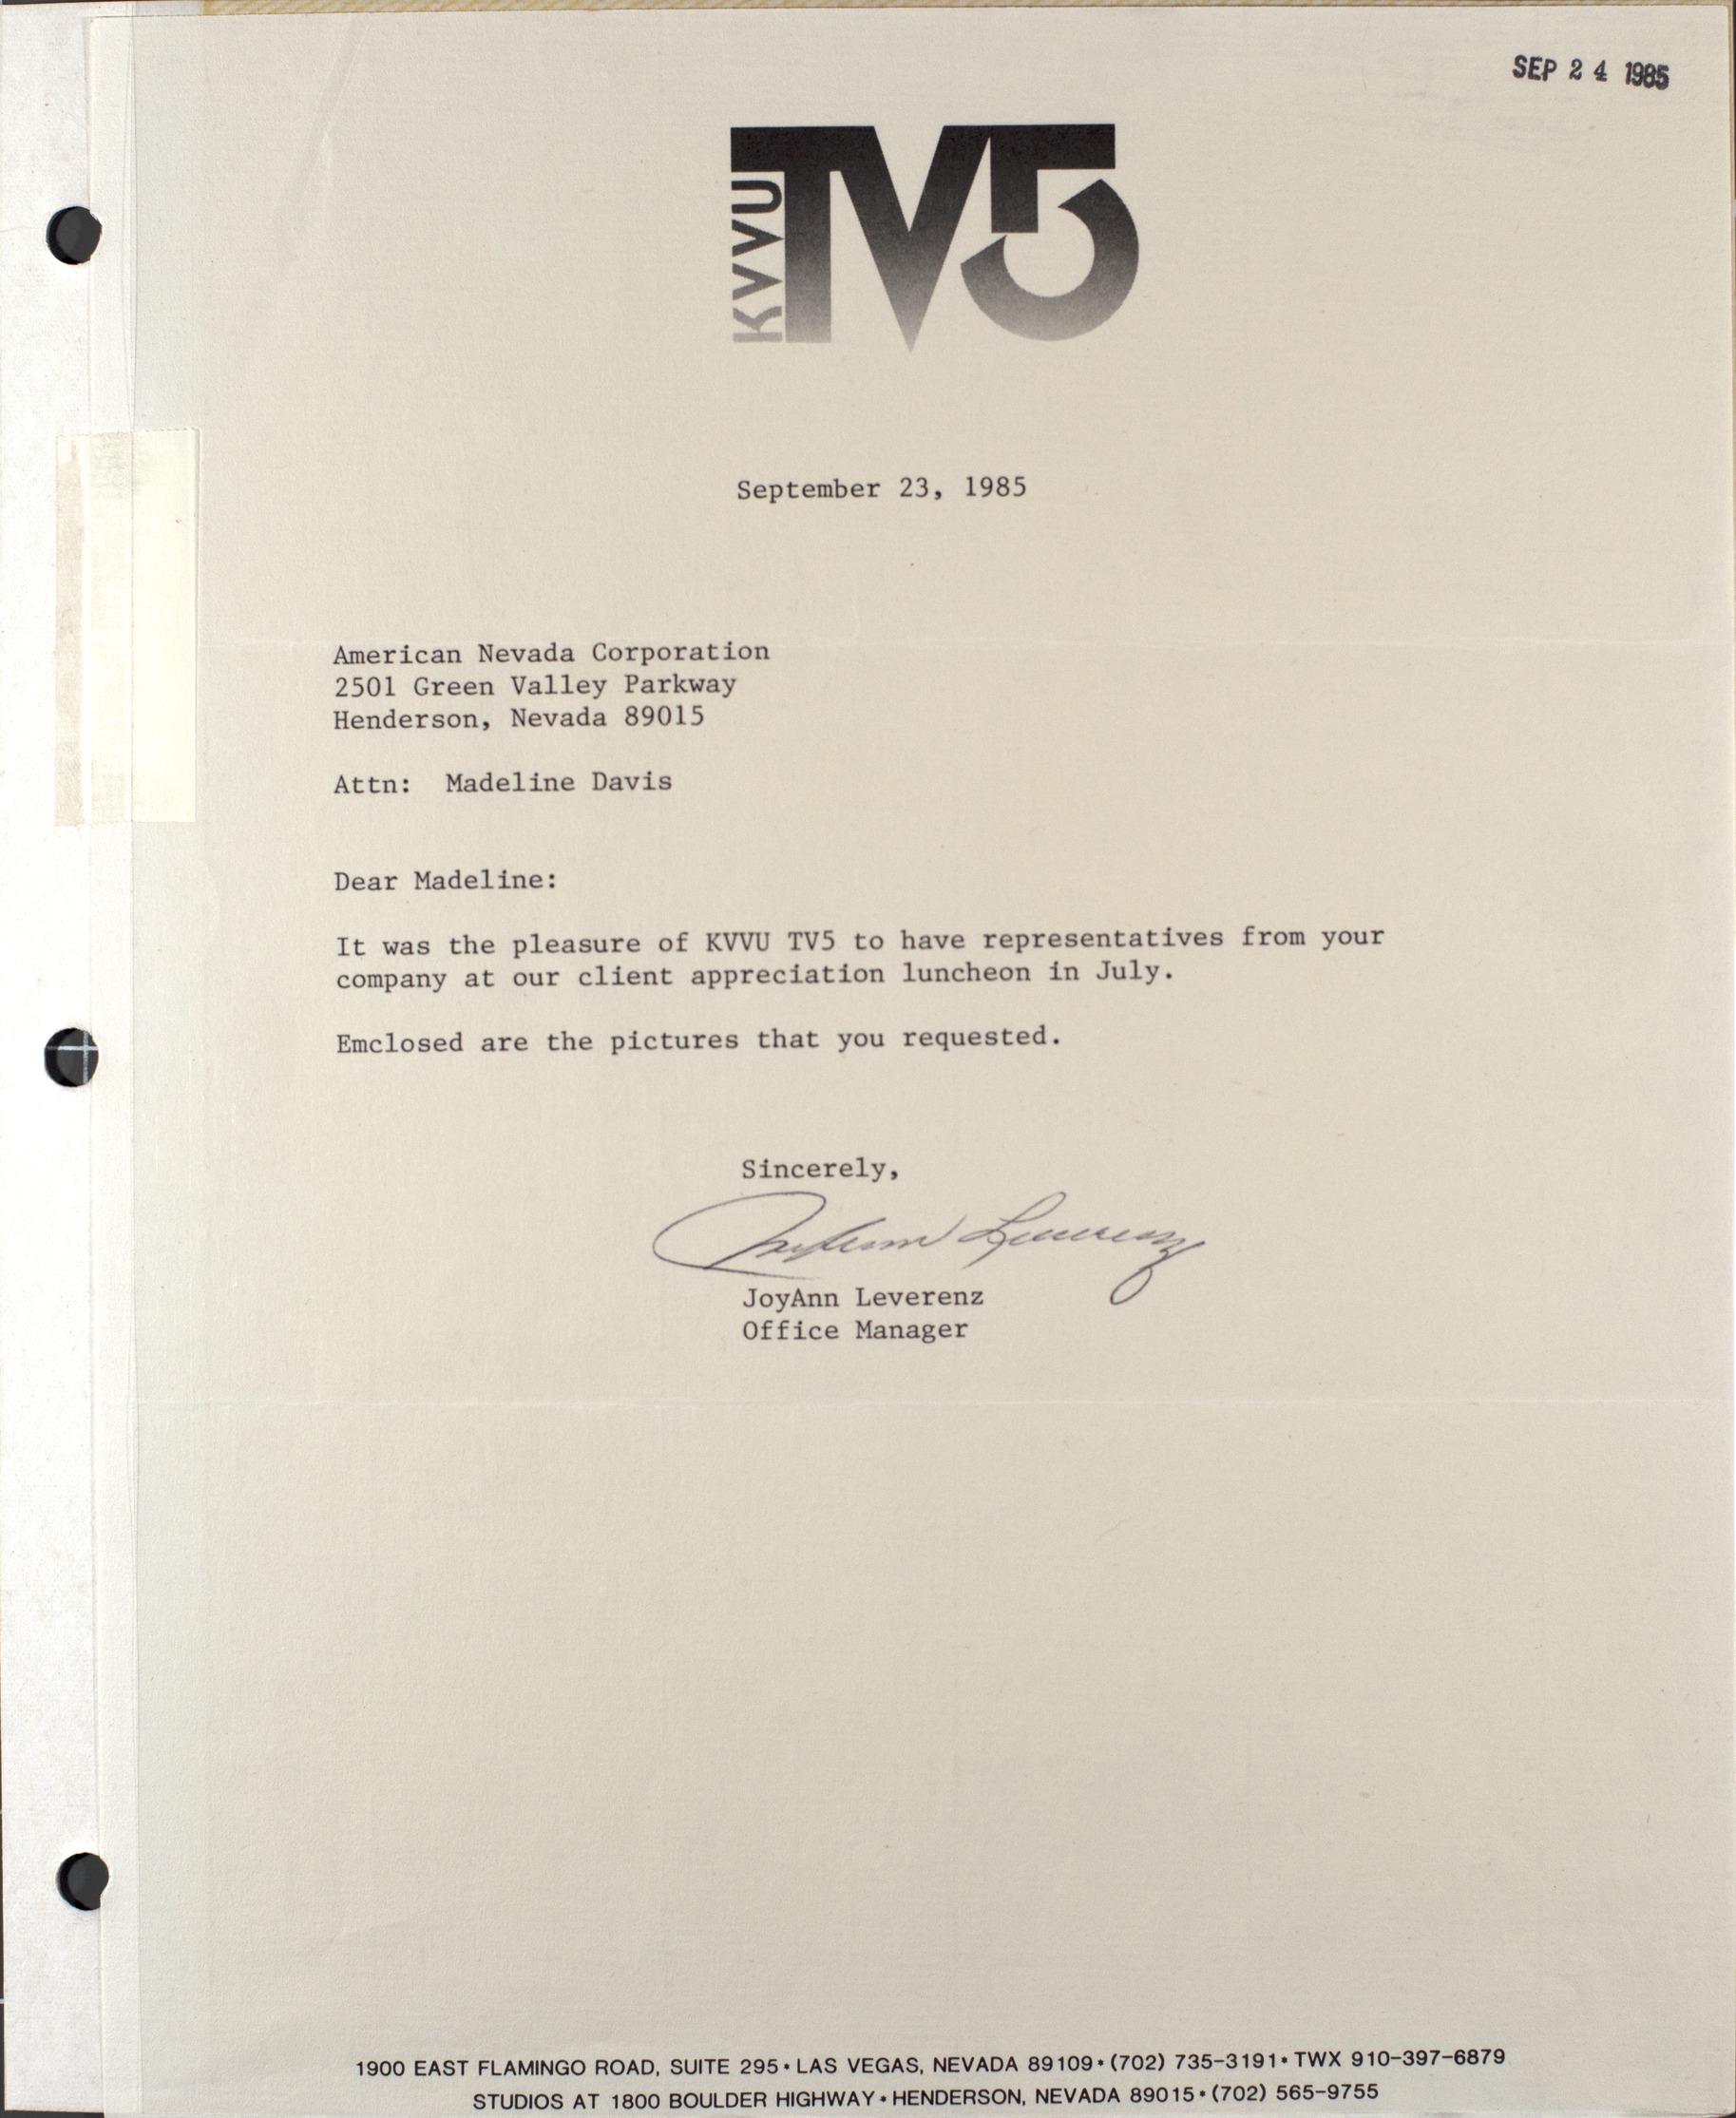 Letter from JoyAnn Leverenz to Madeline Davis, American Nevada Corporation, September 23, 1985